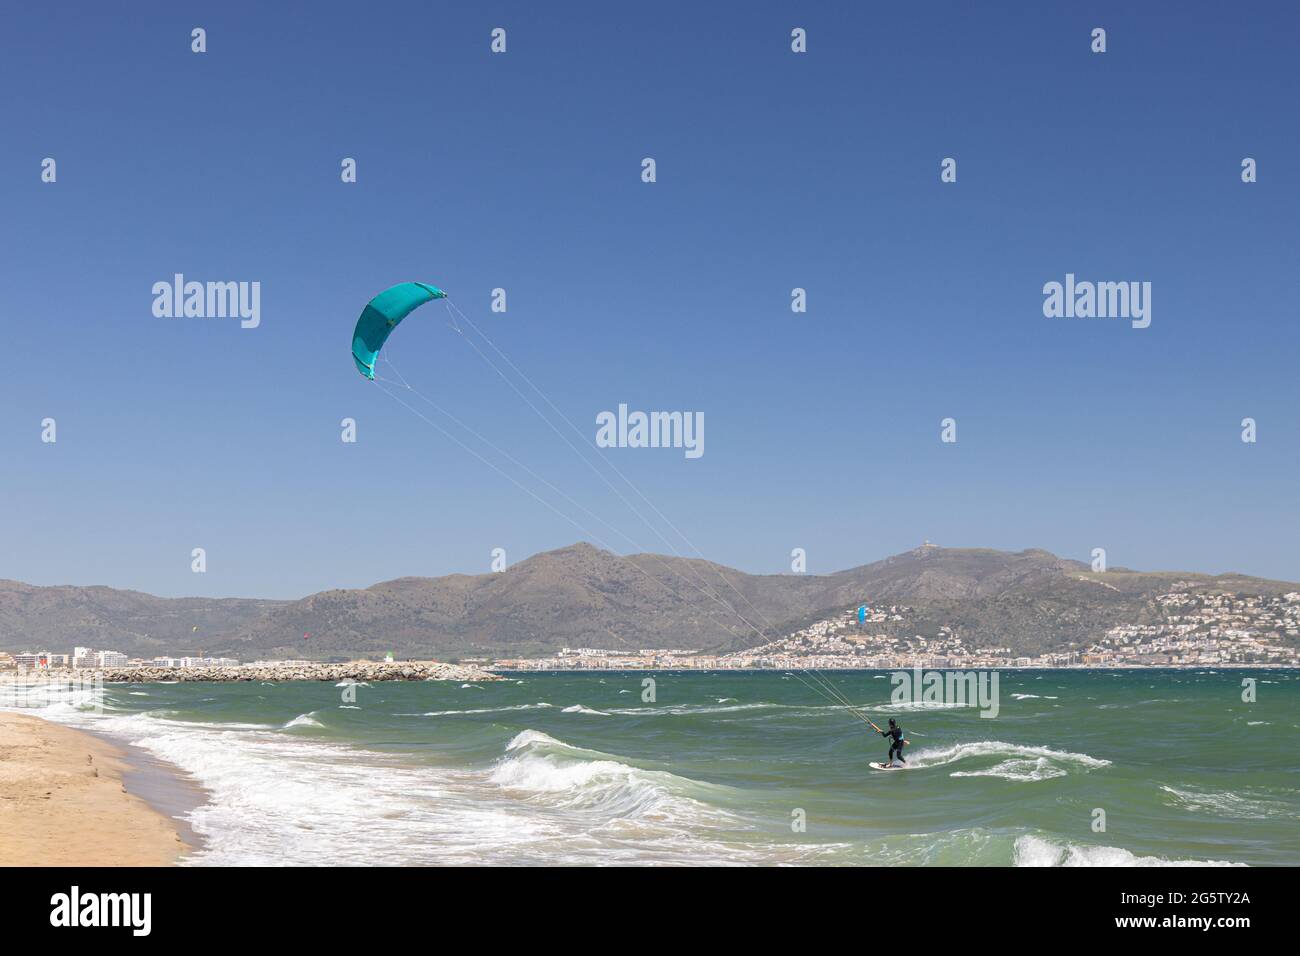 In Empuriabrava, Costa Brava, Provinz Girona, Katalonien, Spanien, wird ein Kiteboarder bei starkem Onshore-Wind von einem Starkdrachen über das Wasser gezogen. Kiteb Stockfoto